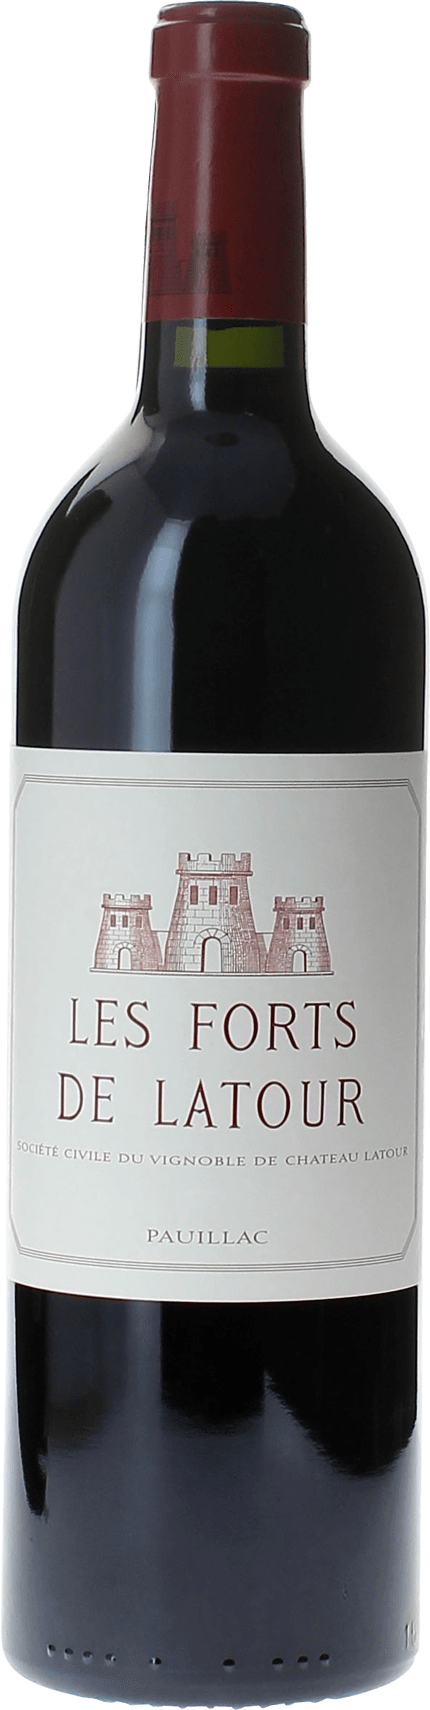 Les forts de latour 1985 2me vin de LATOUR Pauillac, Bordeaux rouge